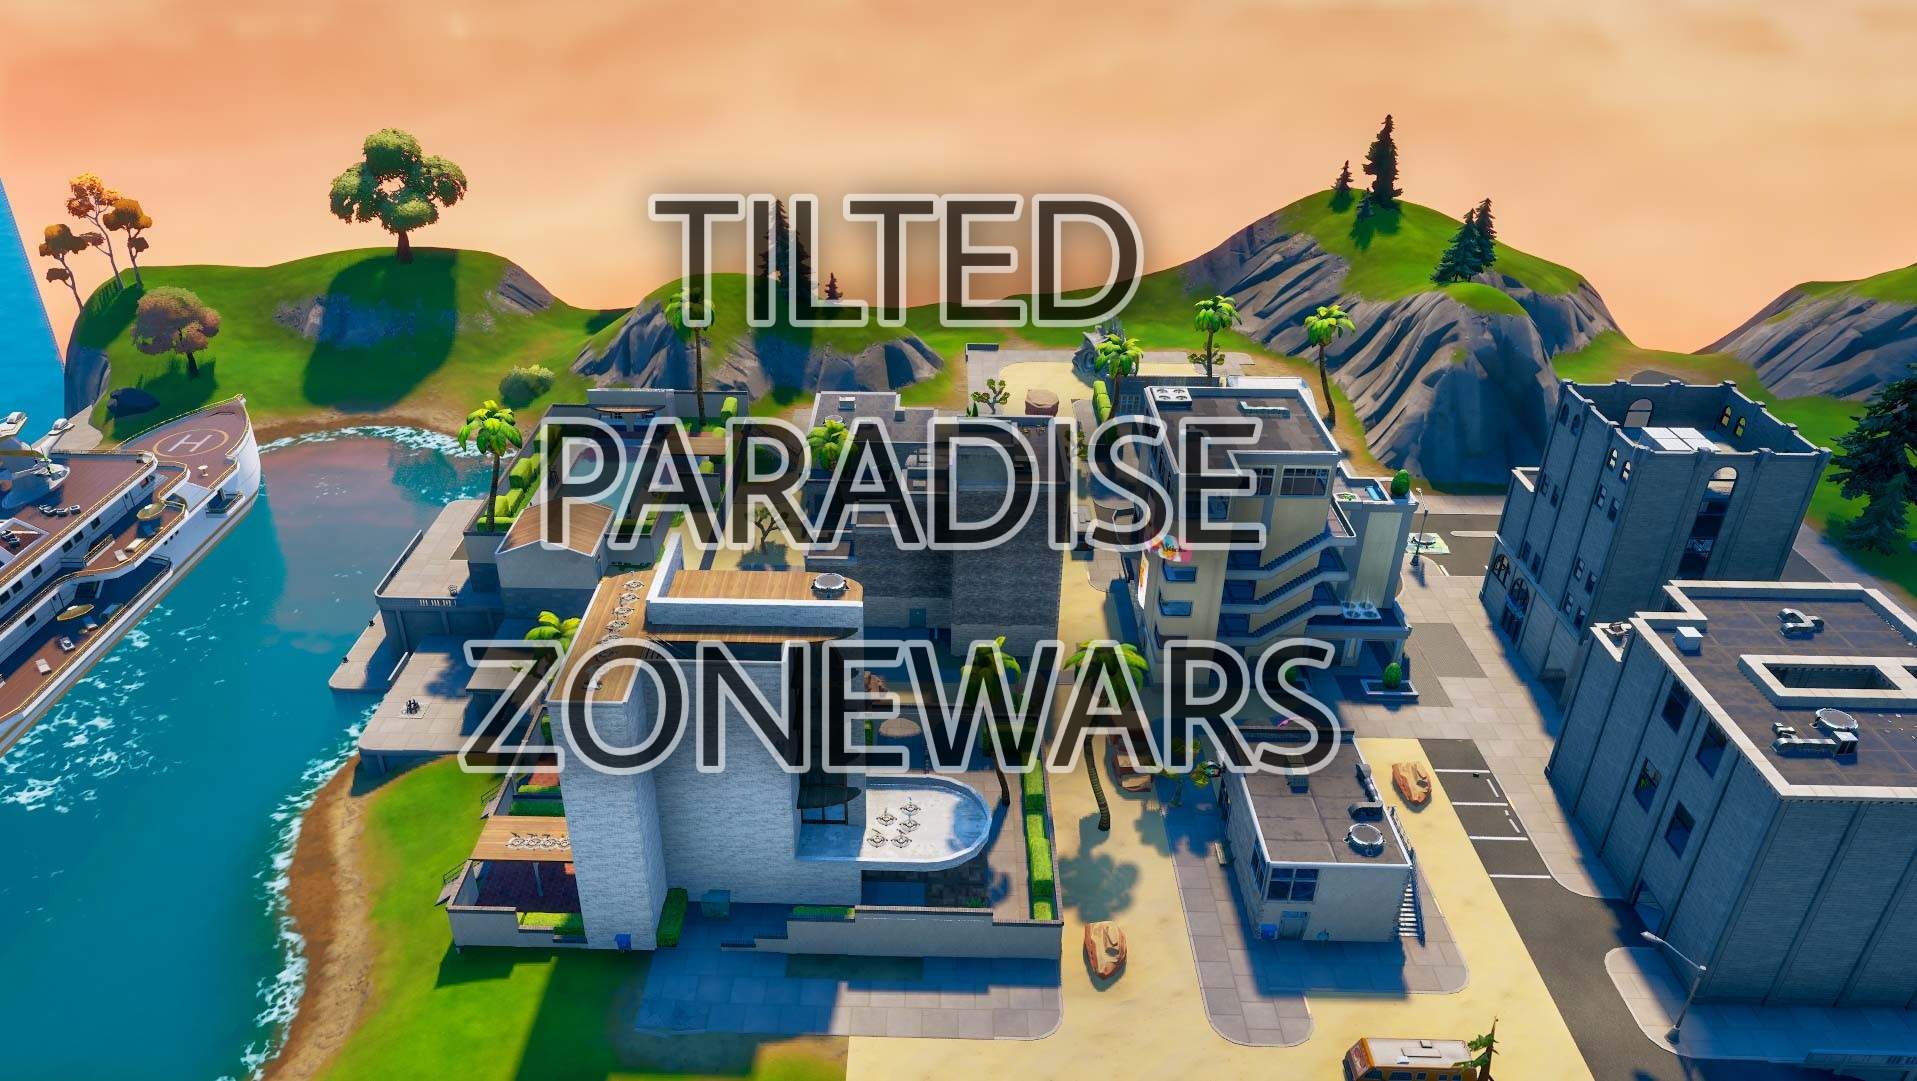 Tilted Paradise zonewars 💯 image 2